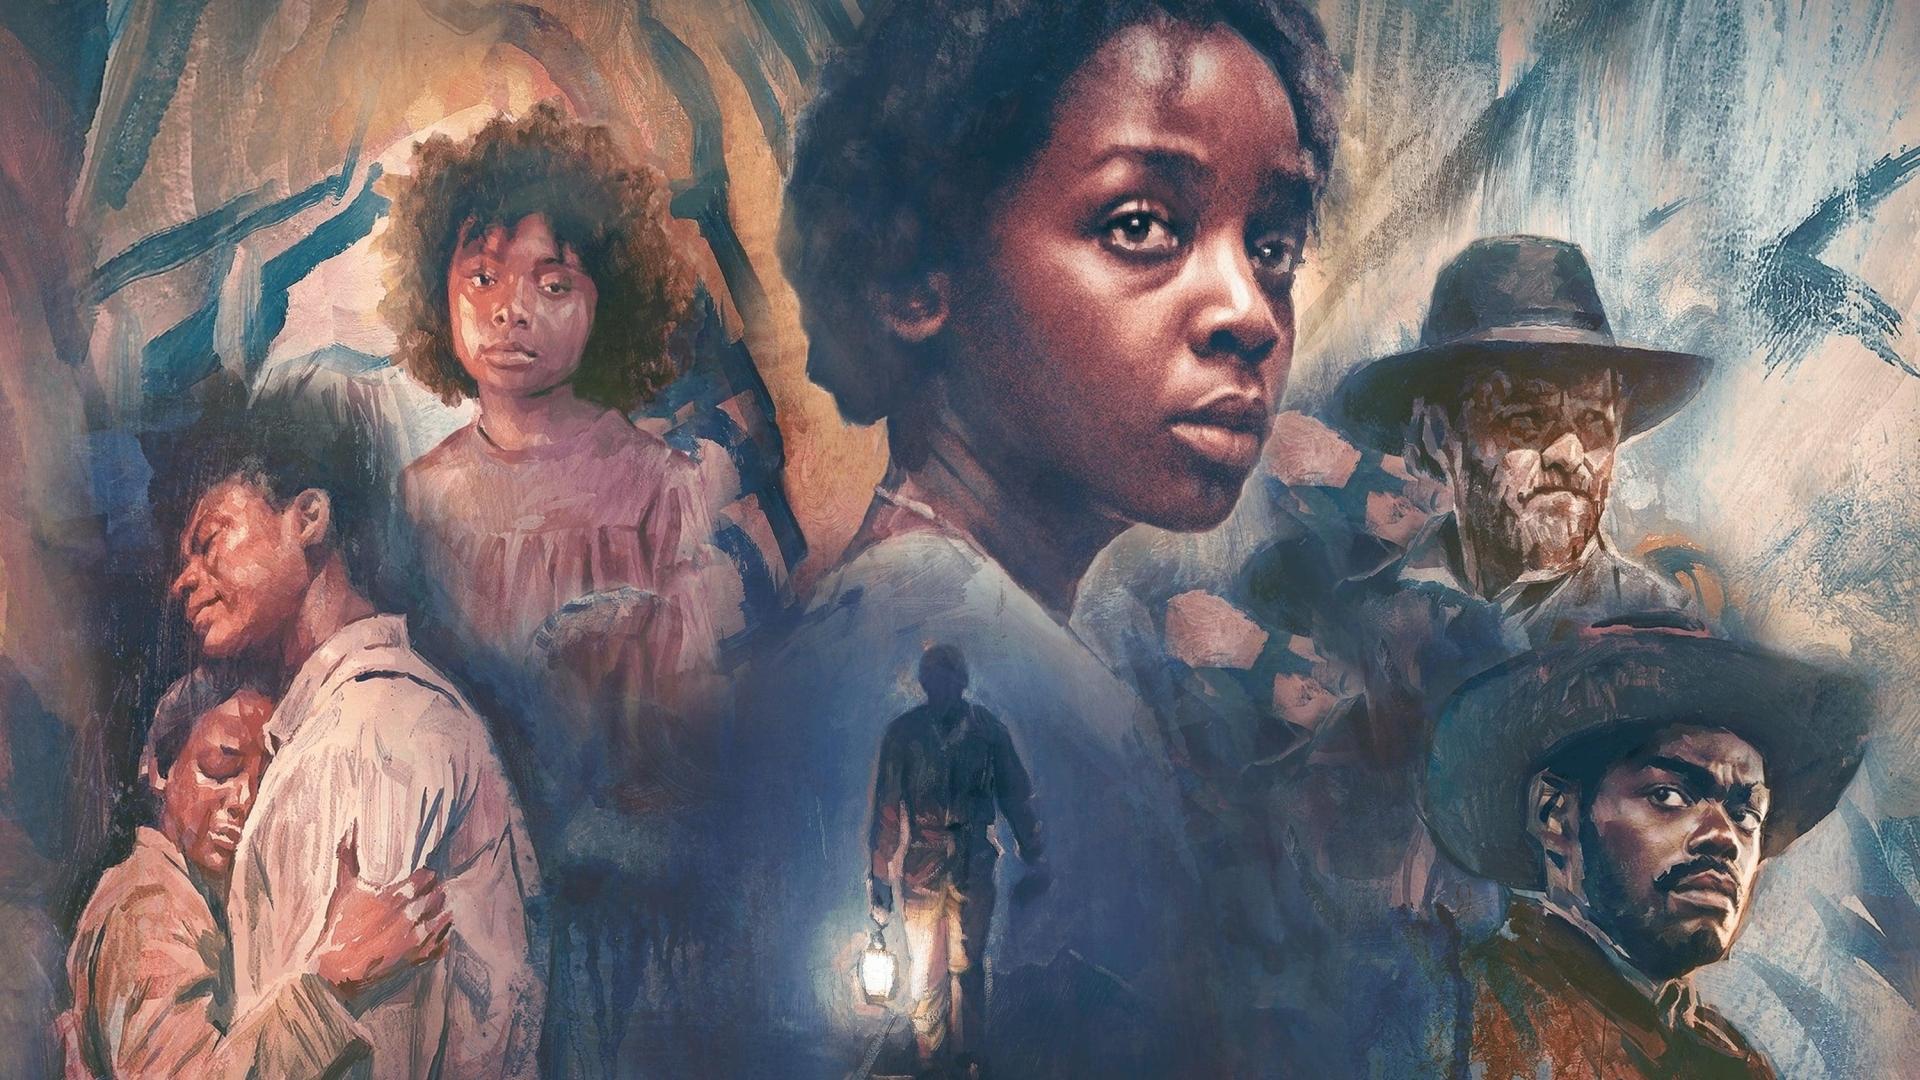 دانلود سریال The Underground Railroad